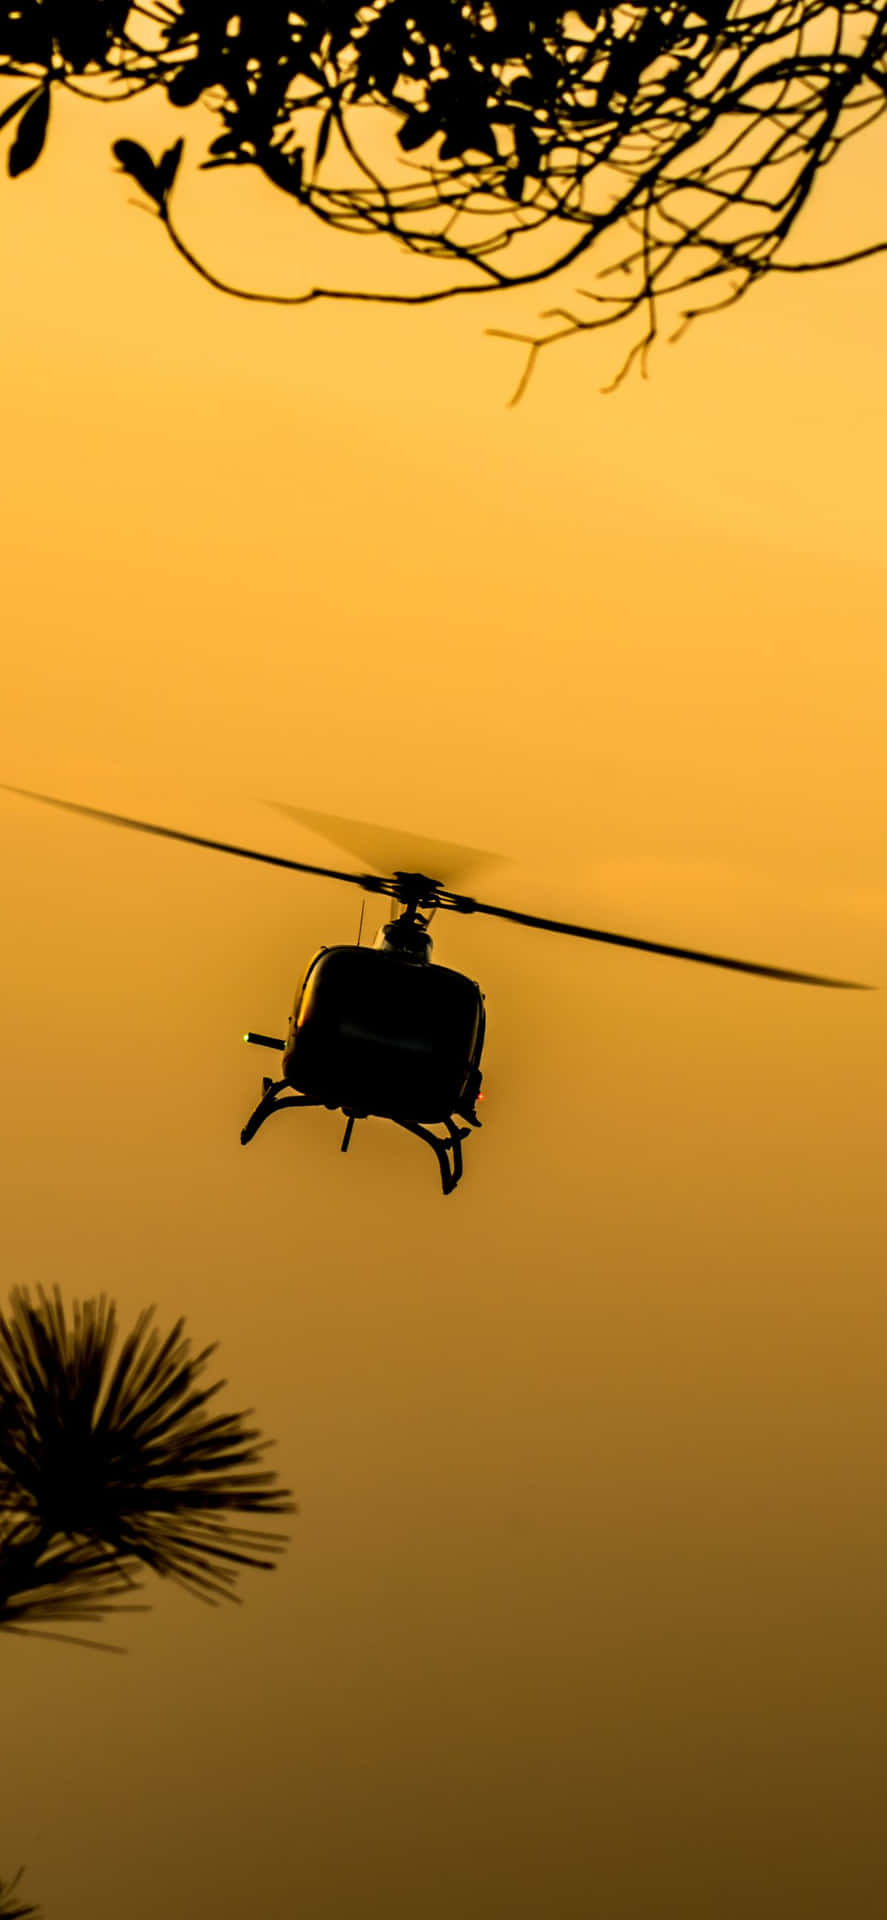 Et luftfoto af en elegant helikopter, der bærer den nye iPhone Xs Max.